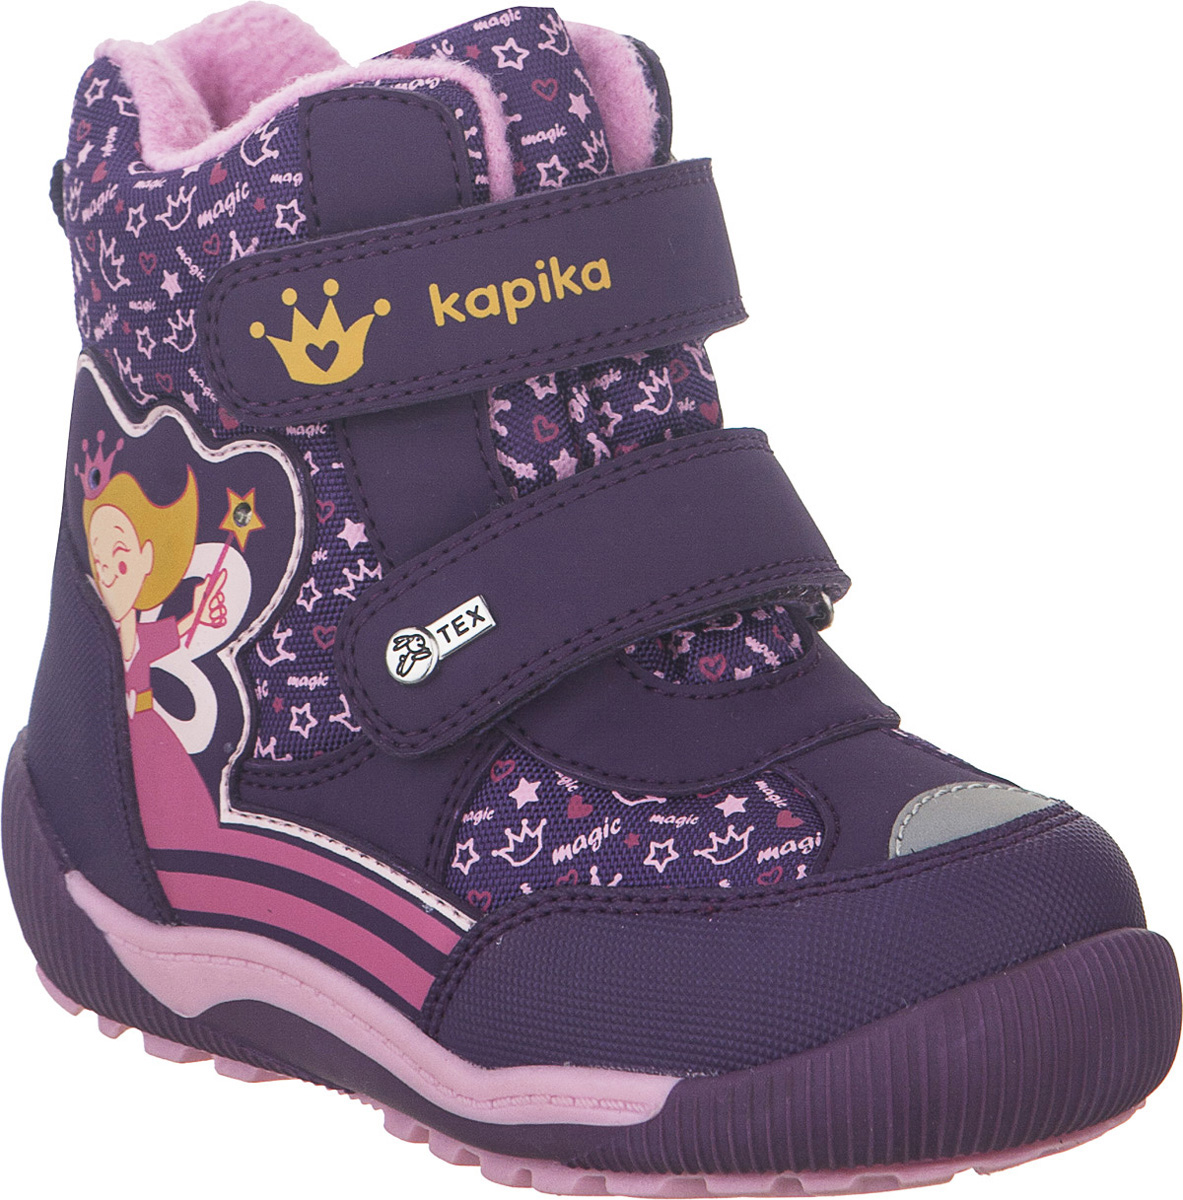 Ботинки для девочки Kapika KapiTEX, цвет: фиолетовый. 41214-1. Размер 23